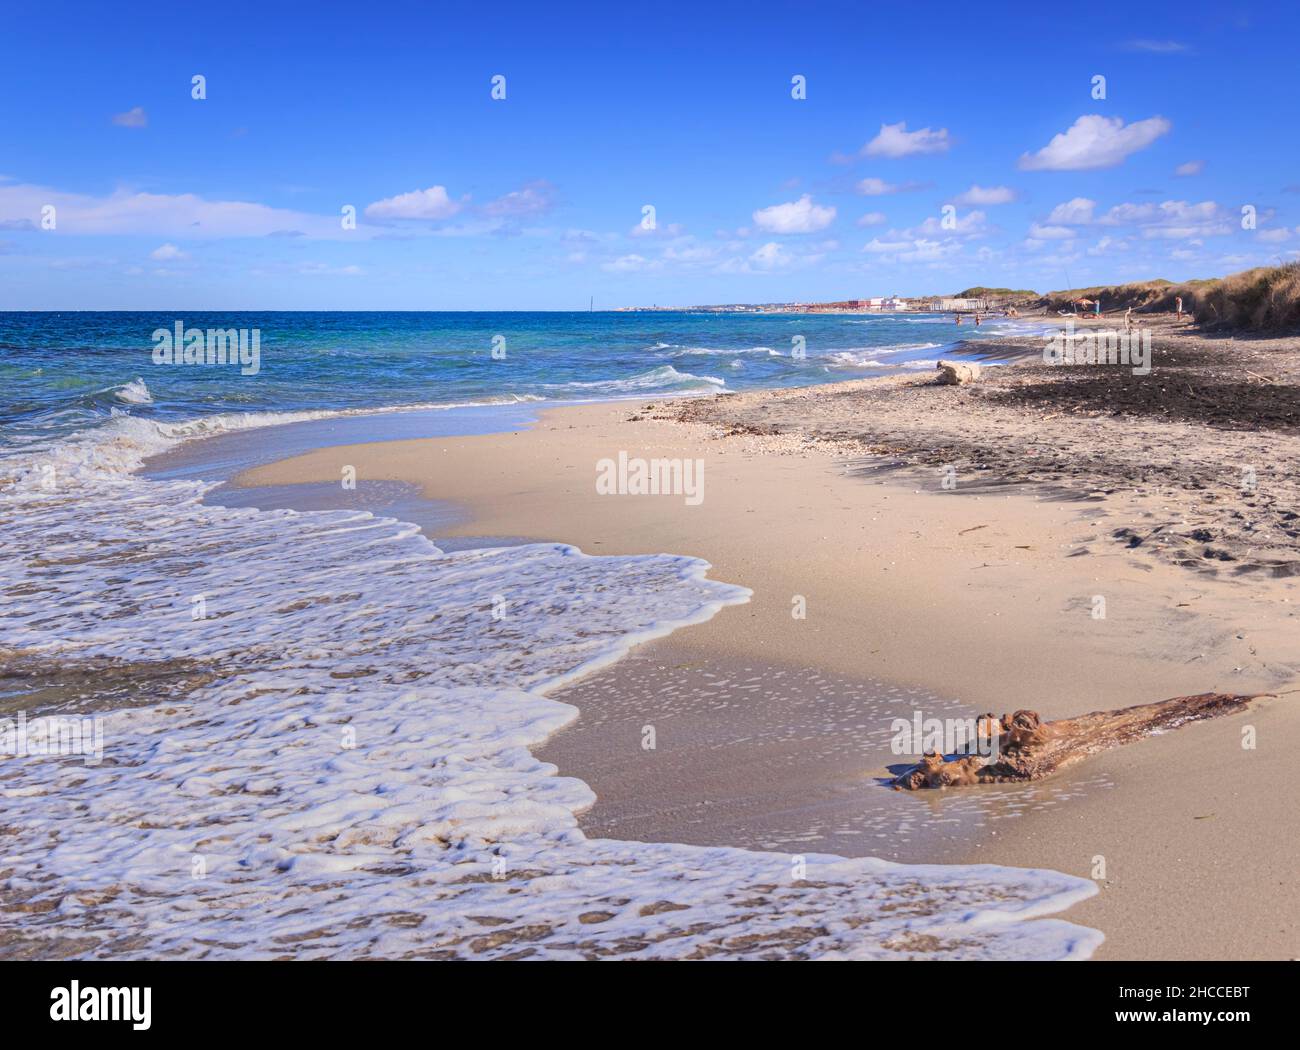 L'été.les plus belles plages de sable d'Apulia: Réserve naturelle le Cesine.C'est une zone humide d'importance internationale. Banque D'Images